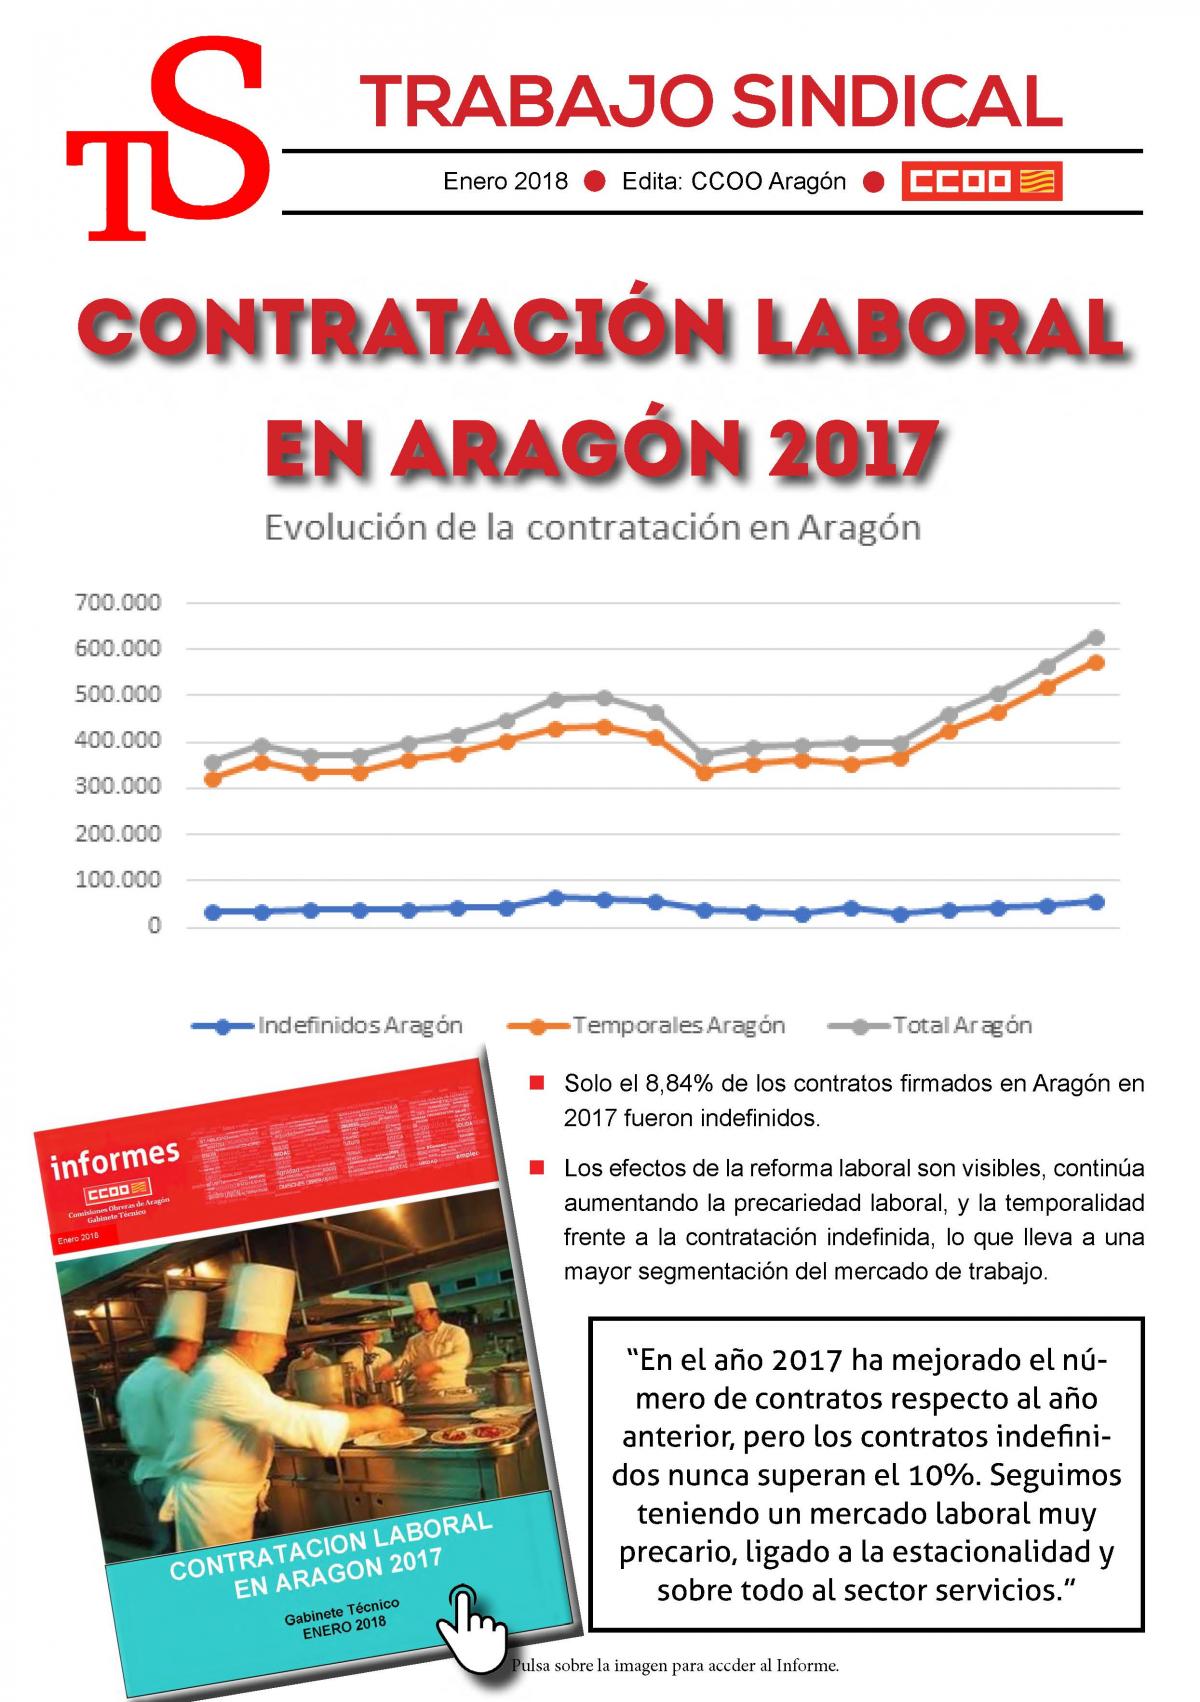 Trabajo Sindical contratacin laboral en Aragn 2017